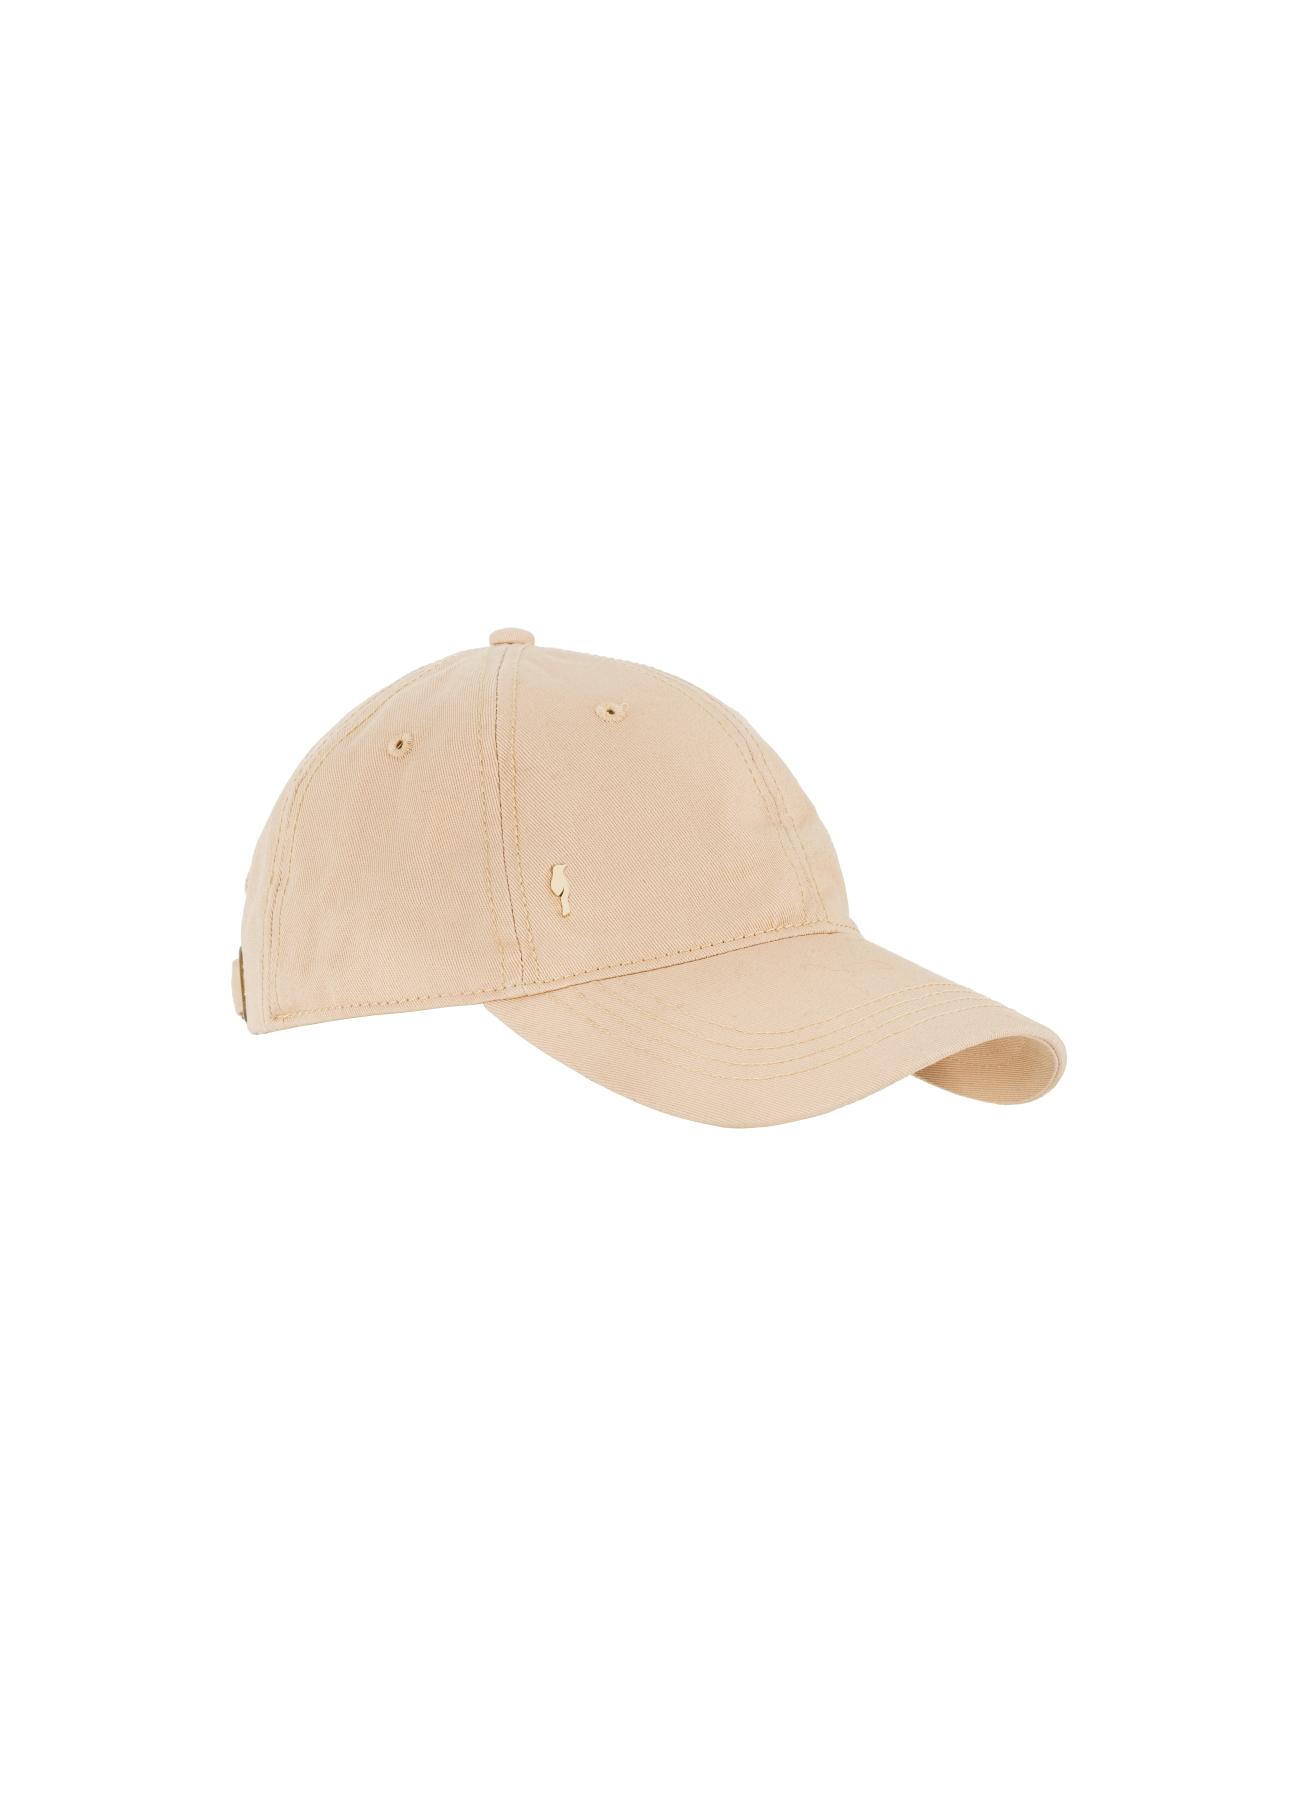 Beżowa czapka z daszkiem z logo CZALT-0001-81(W24)